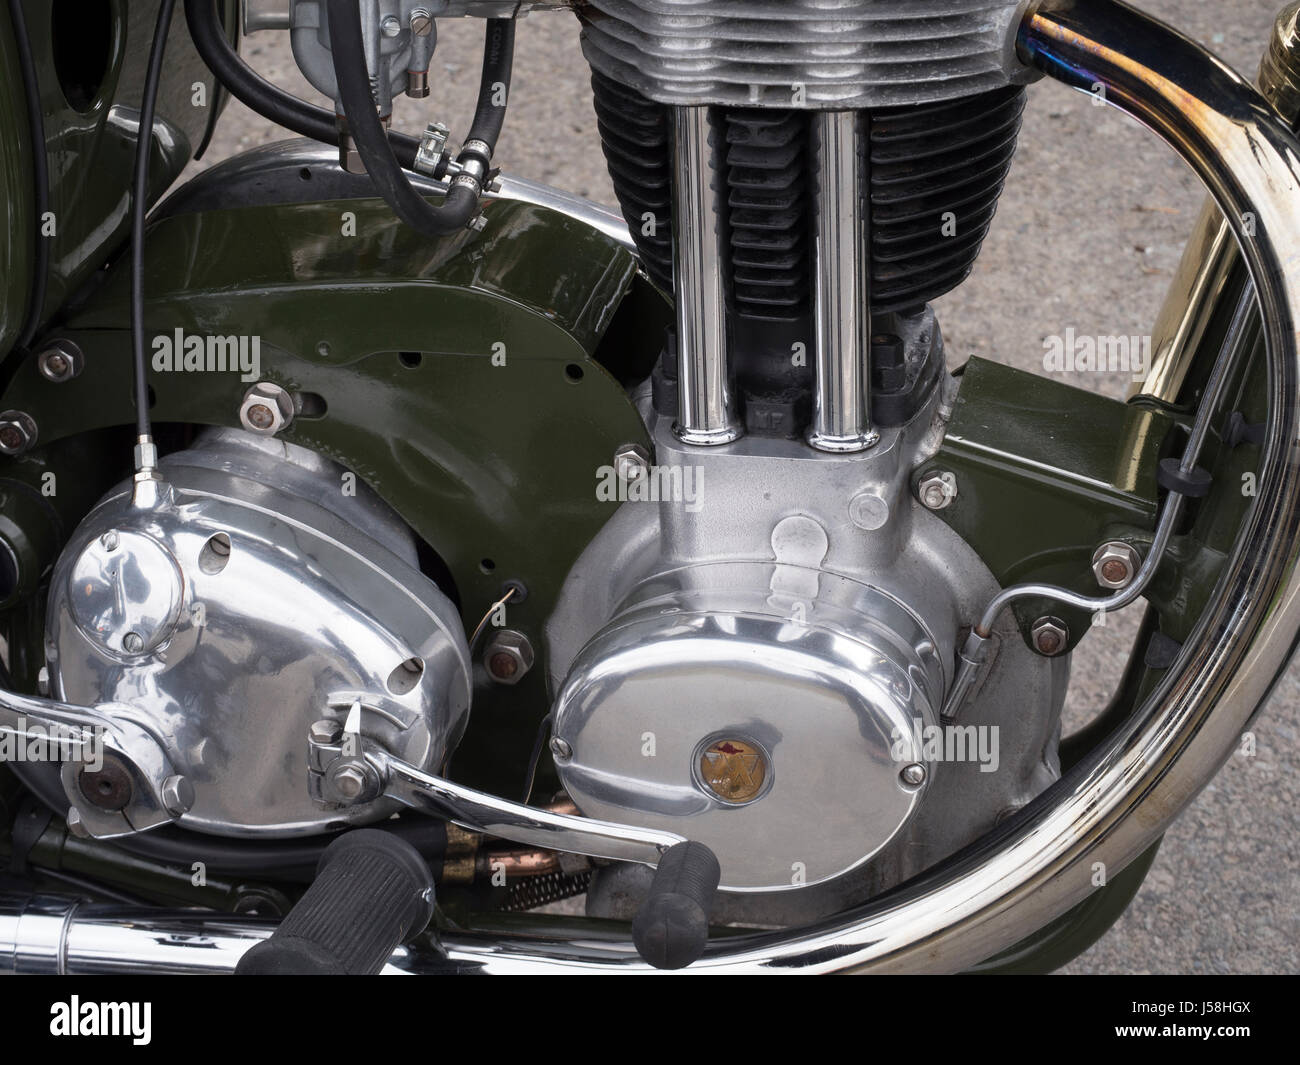 La funzione AFS inimitabile motocicletta vintage. Foto Stock